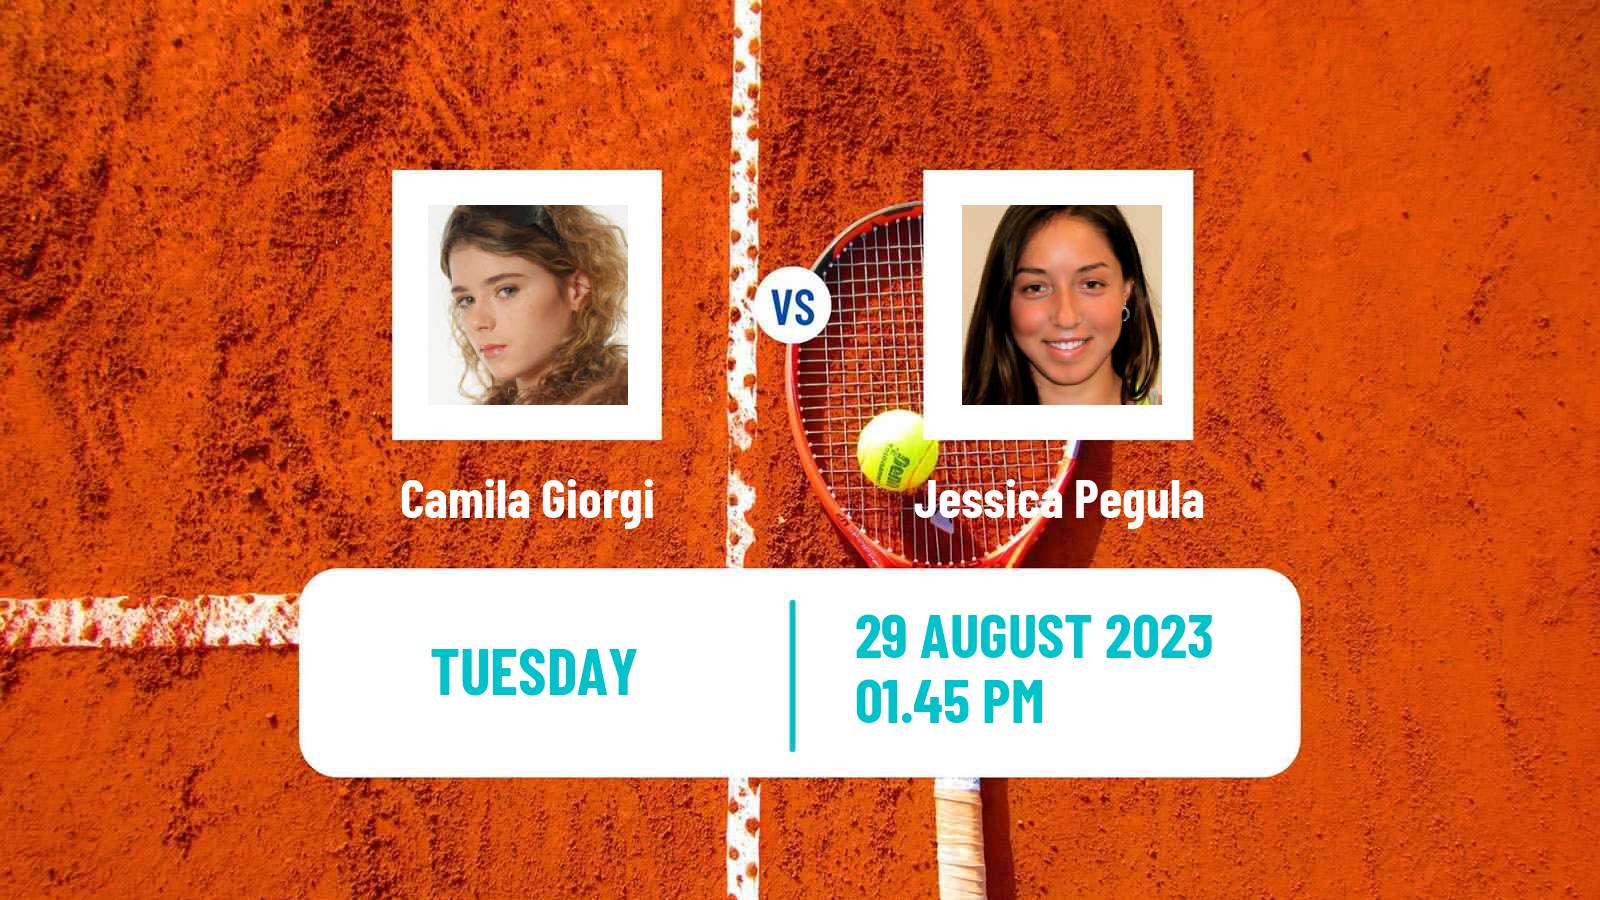 Tennis WTA US Open Camila Giorgi - Jessica Pegula